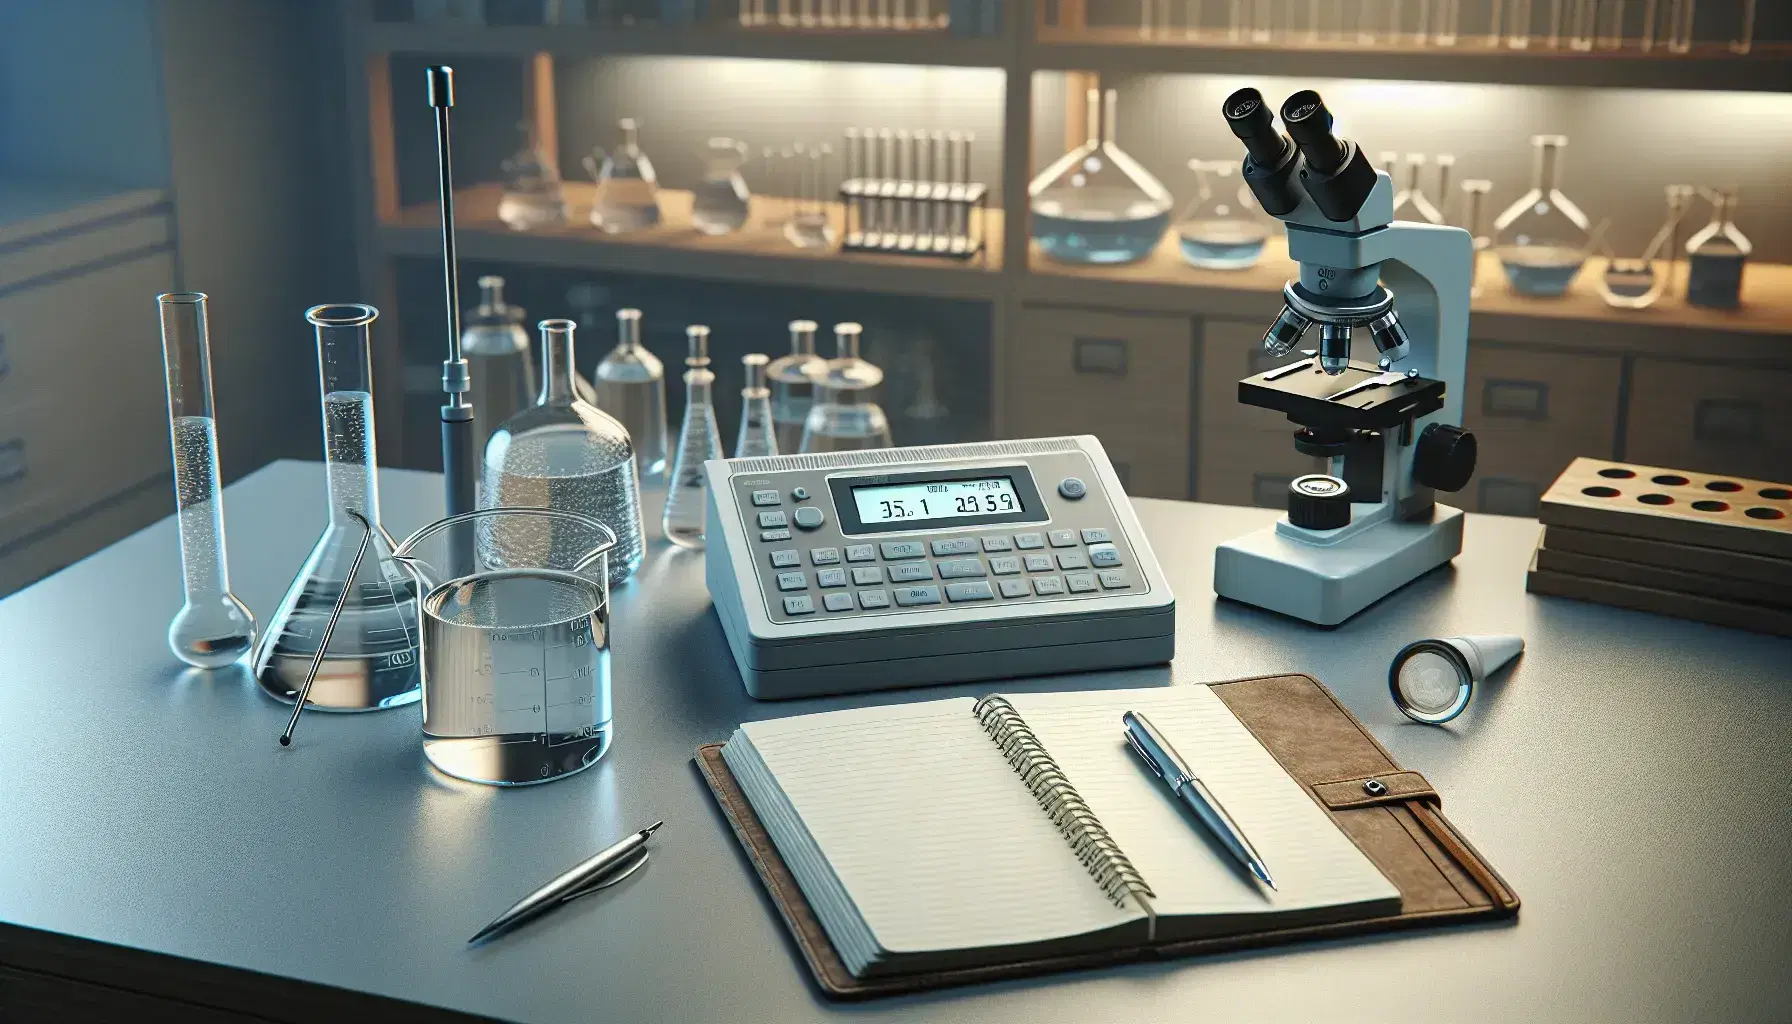 Primer plano de un laboratorio científico con medidor de conductividad digital y electrodo en agua, cuaderno con bolígrafo y guantes de látex, con estantes y microscopio al fondo.